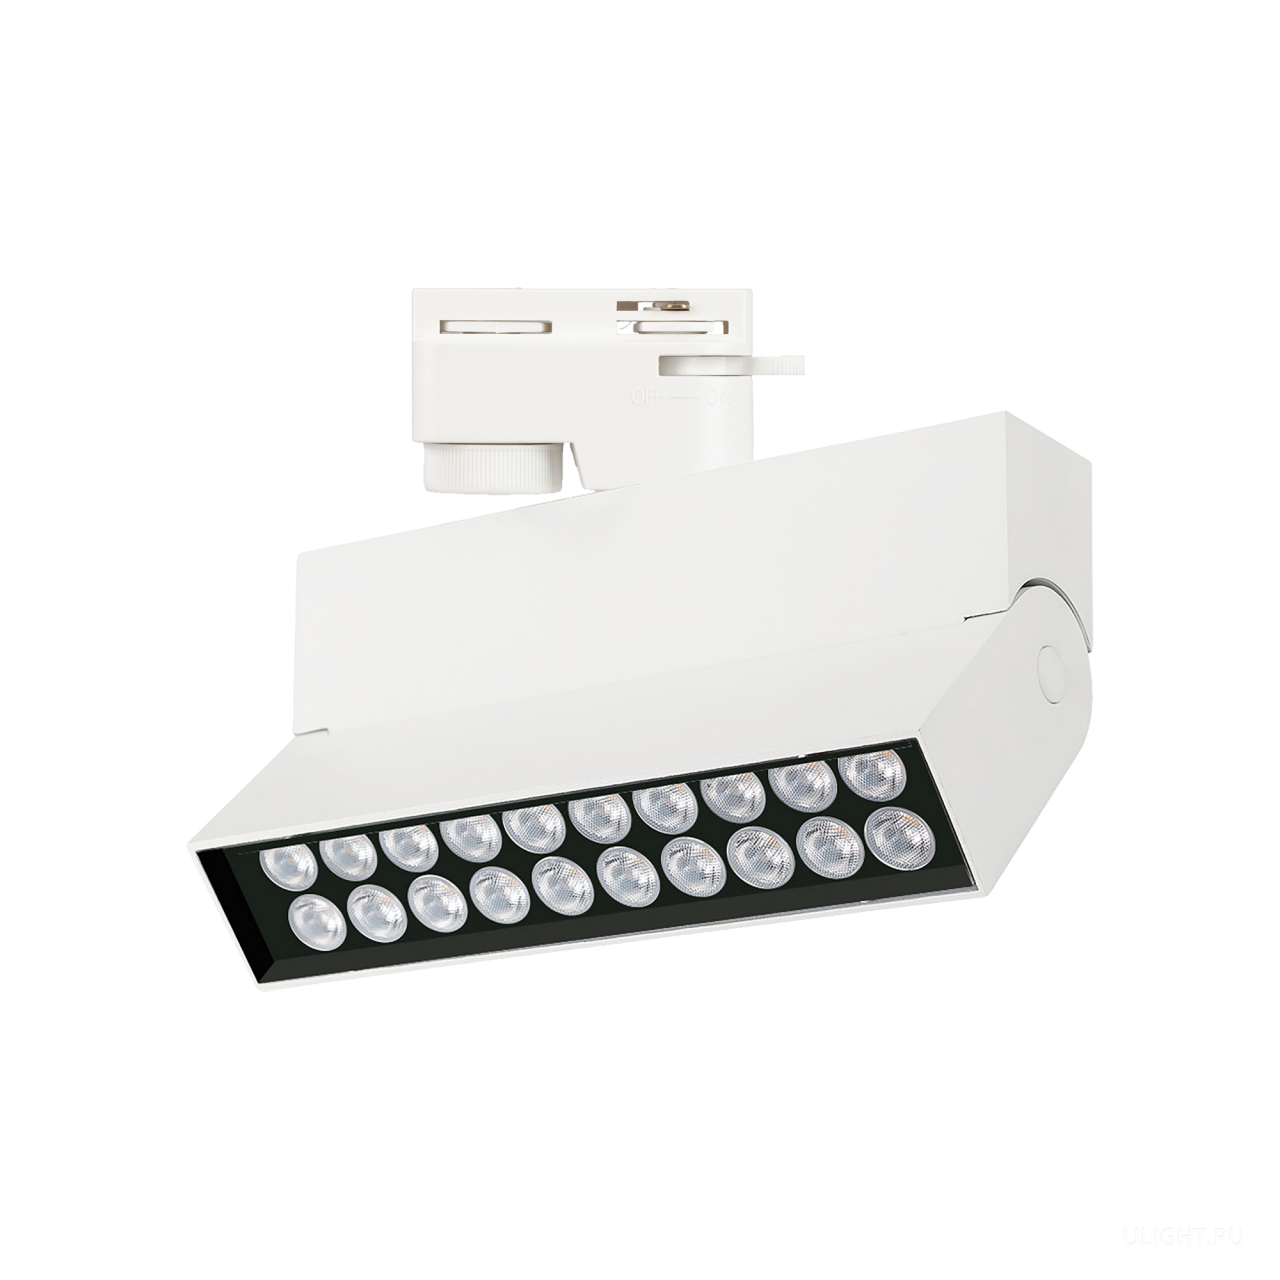 Рекомендован для акцентного освещения в квартирах, офисах, музеях, магазинах с высокими требованиями к качеству света. Высокий индекс цветопередачи (CRI>90) обеспечивает правильную передачу цветовых оттенков, снижает нагрузку на зрение. Установка светильника осуществляется на однофазный трек серии LGD с шиной 2TRA, что позволяет легко менять конфигурацию освещения, свободно перемещая светильник вдоль шины трека. Узкий угол освещения и возможность регулировать направление света позволяют точно расставлять световые акценты.